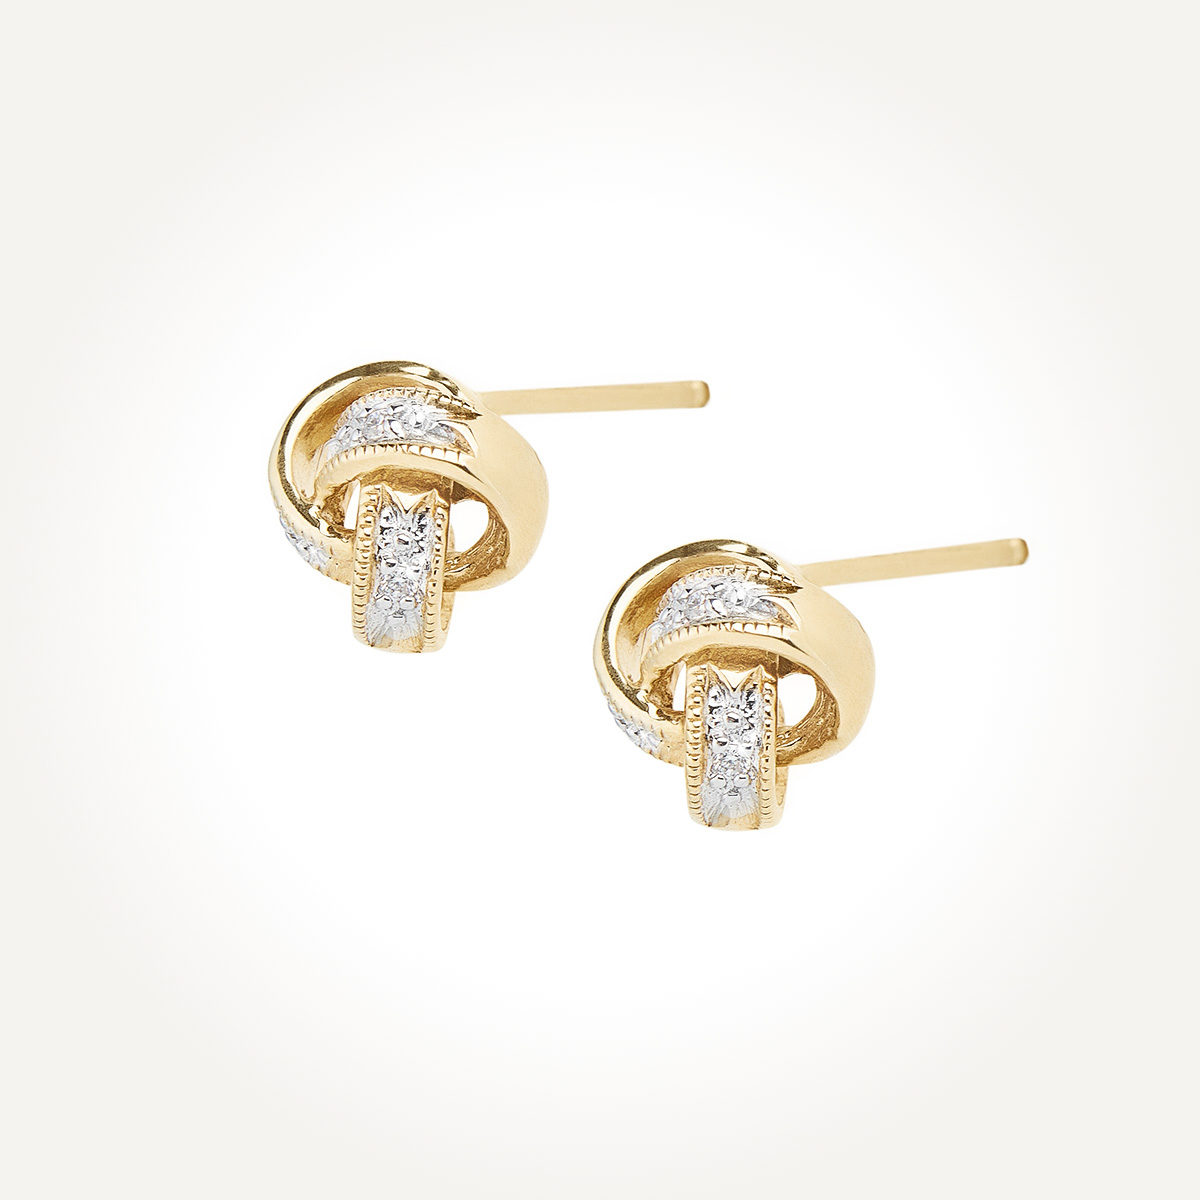 14KT Yellow Gold Diamond Link Earrings 0.02 CT. T.W.